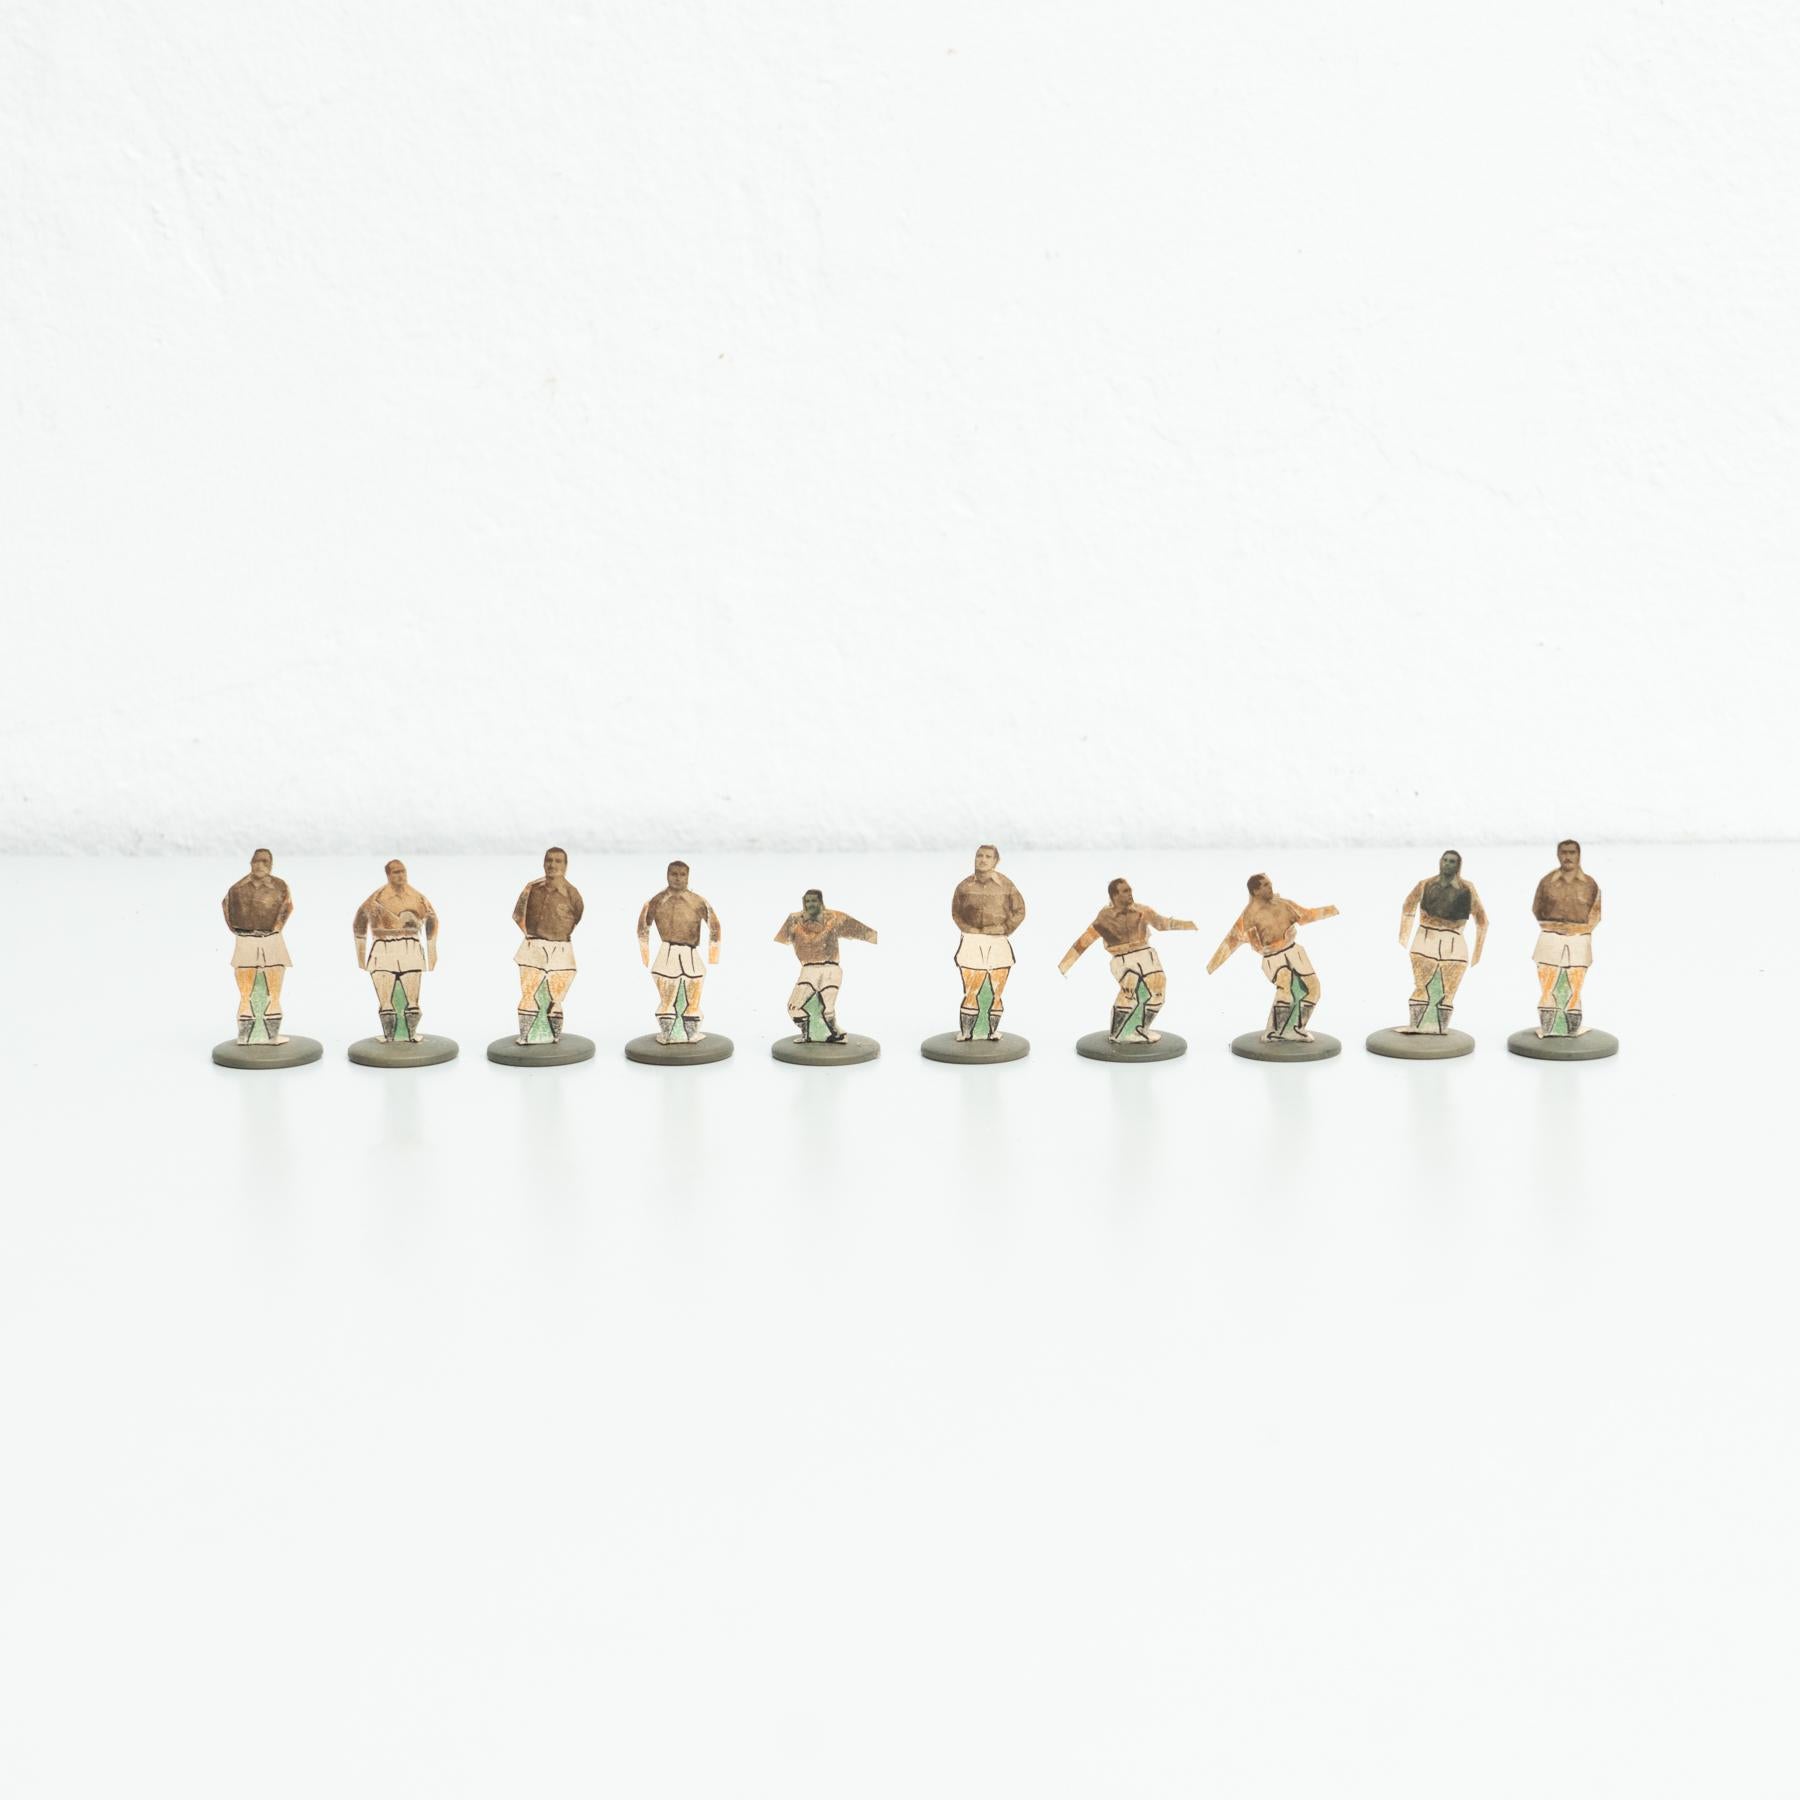 Satz von zehn Tischknopf-Fußballspielern. Traditionelle Figuren, mit denen dieses klassische spanische Knopfspiel gespielt wird. 

Hergestellt in Spanien, ca. 1950.

Originaler Zustand mit geringen alters- und gebrauchsbedingten